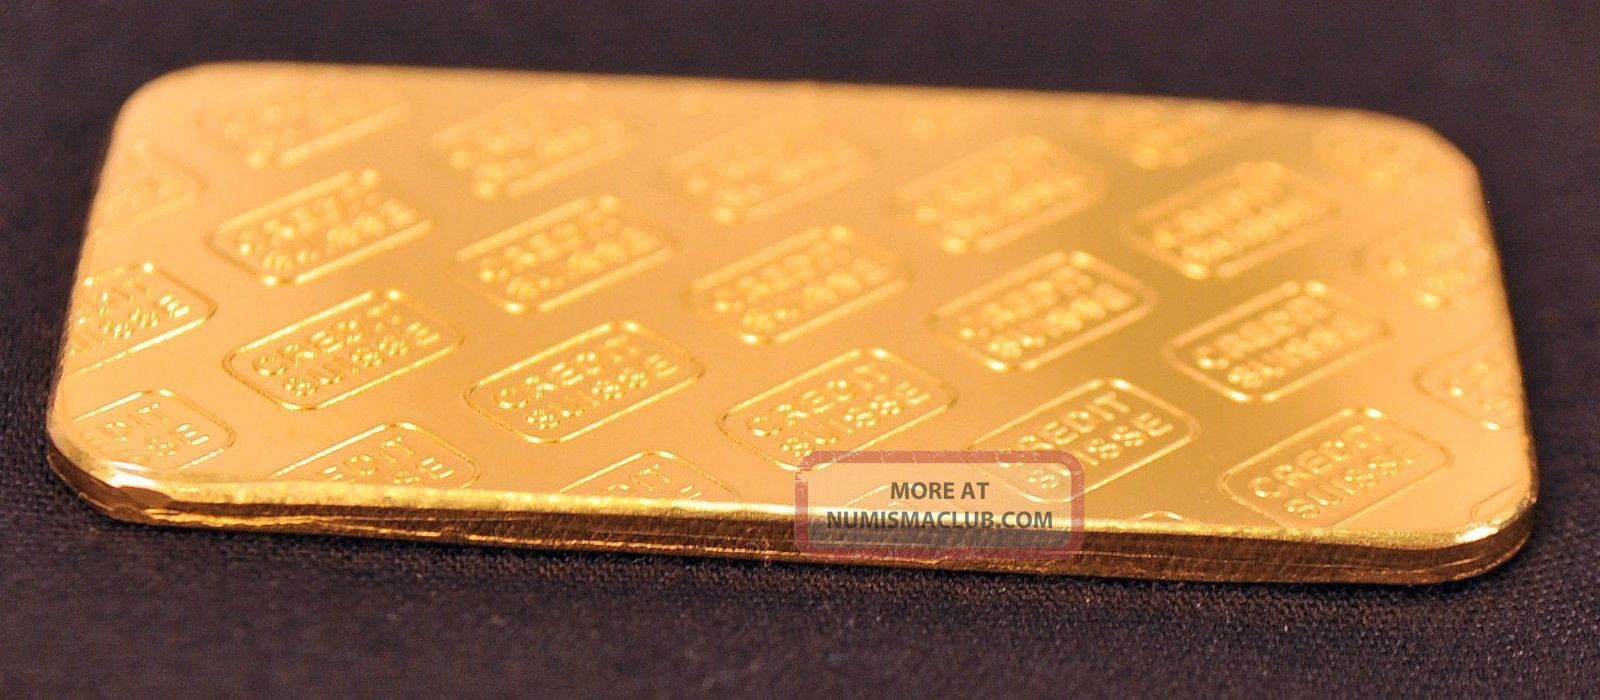 1 oz credit suisse gold bar .9999 fine in assay